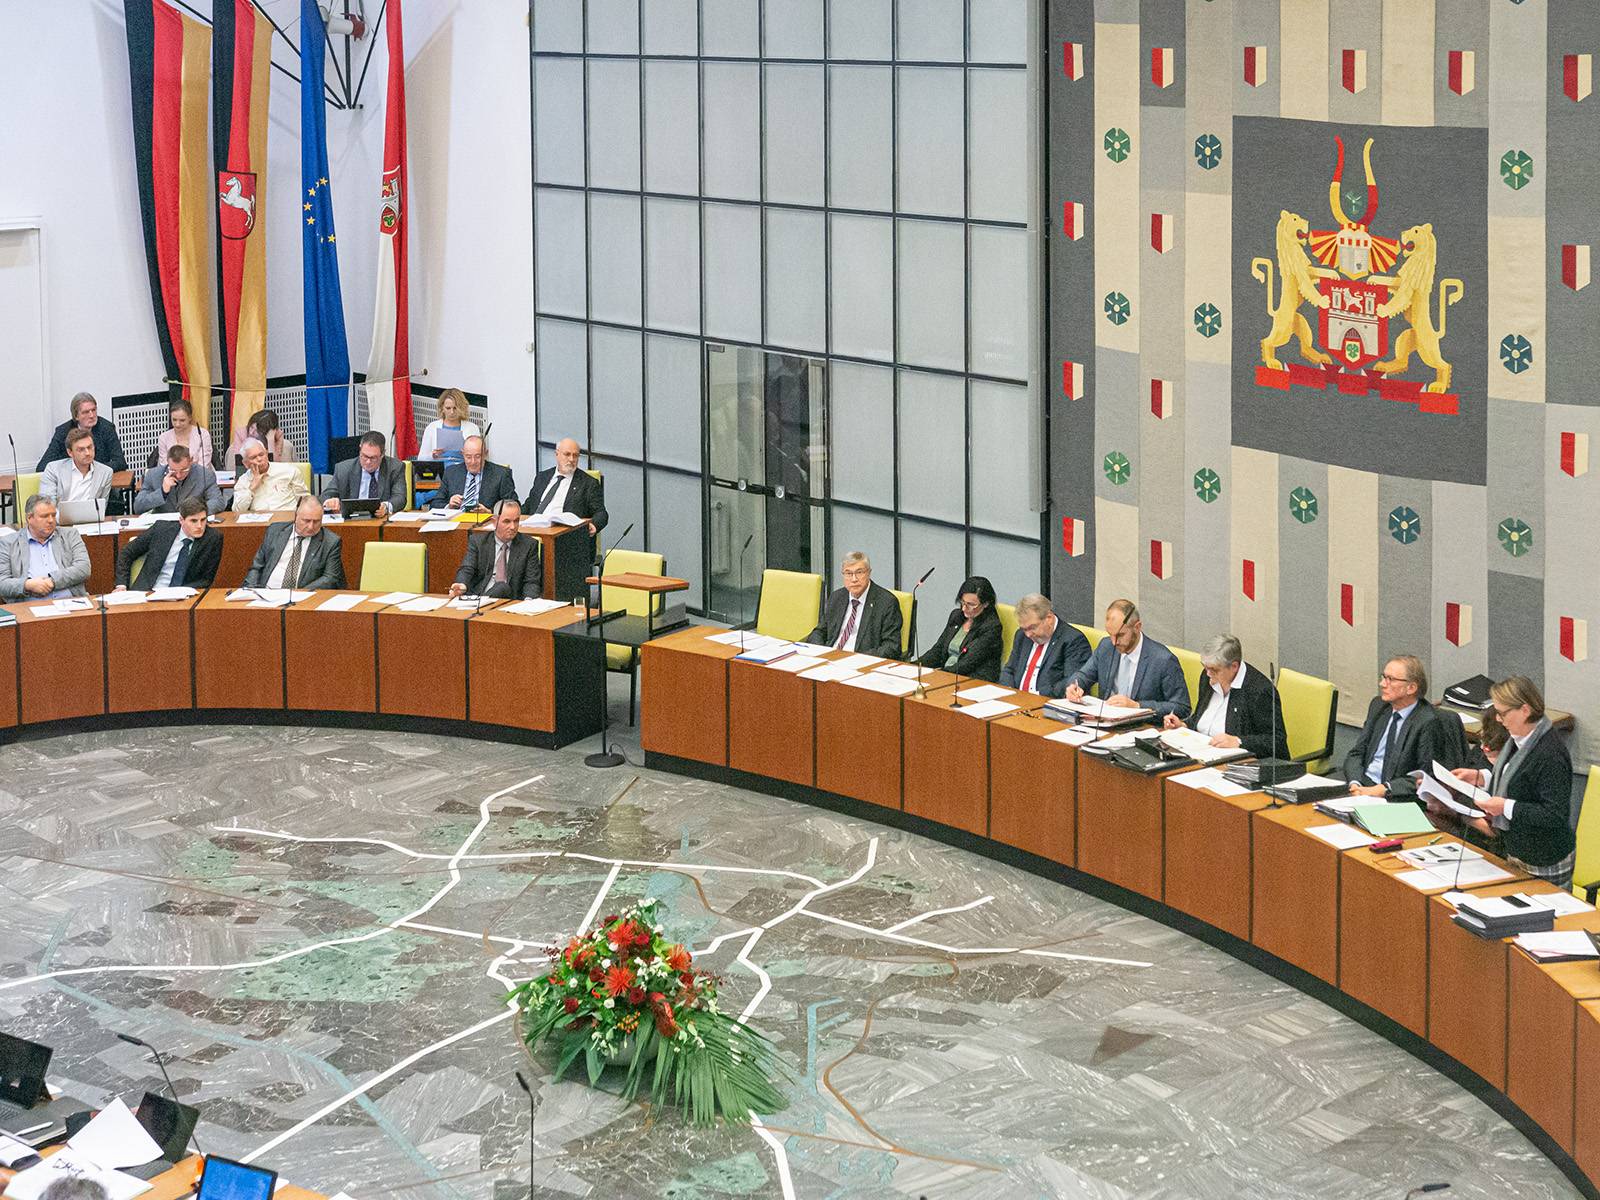 Blick in die Ratssitzung am 28. November 2019